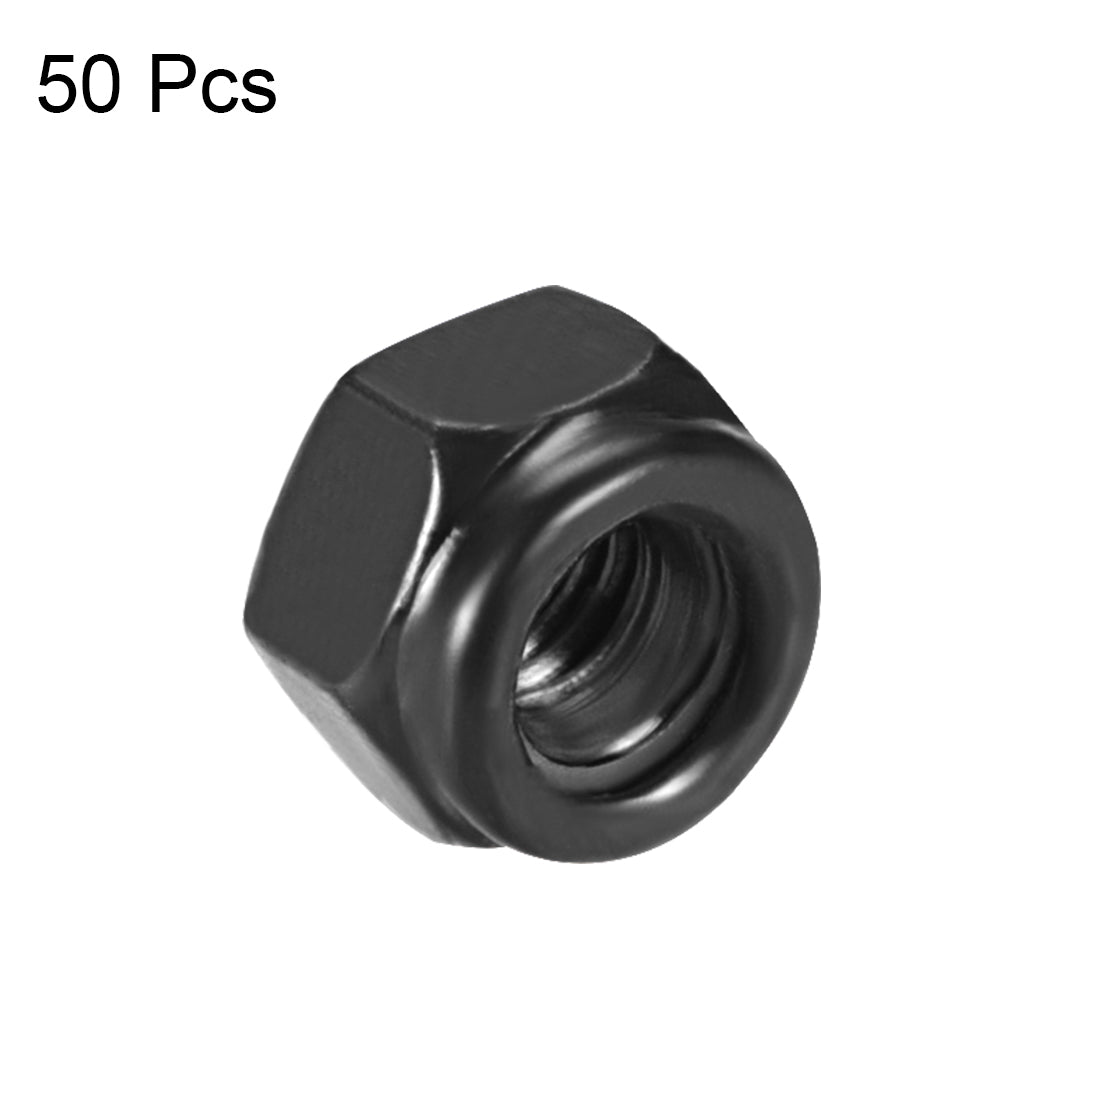 uxcell Uxcell M3x0.5mm Hex Lock Nuts Carbon Steel Nylon Insert Self-Lock Nuts, 50Pcs Black